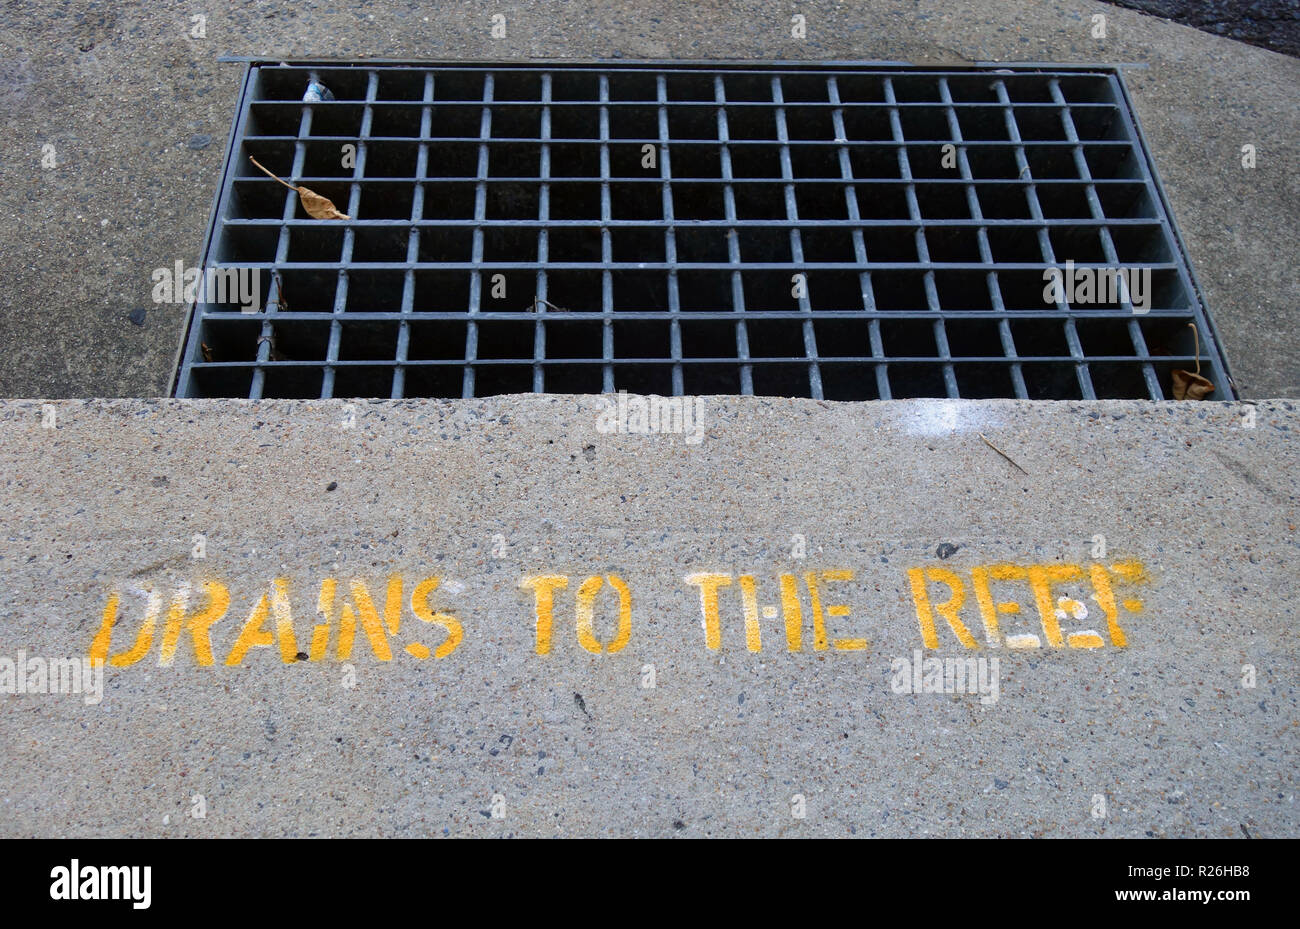 Signe au pochoir est déchargée à lecture Reef de rappeler aux gens au sujet de la qualité de l'eau de ruissellement, Cairns, Queensland, Australie. Pas de PR Banque D'Images